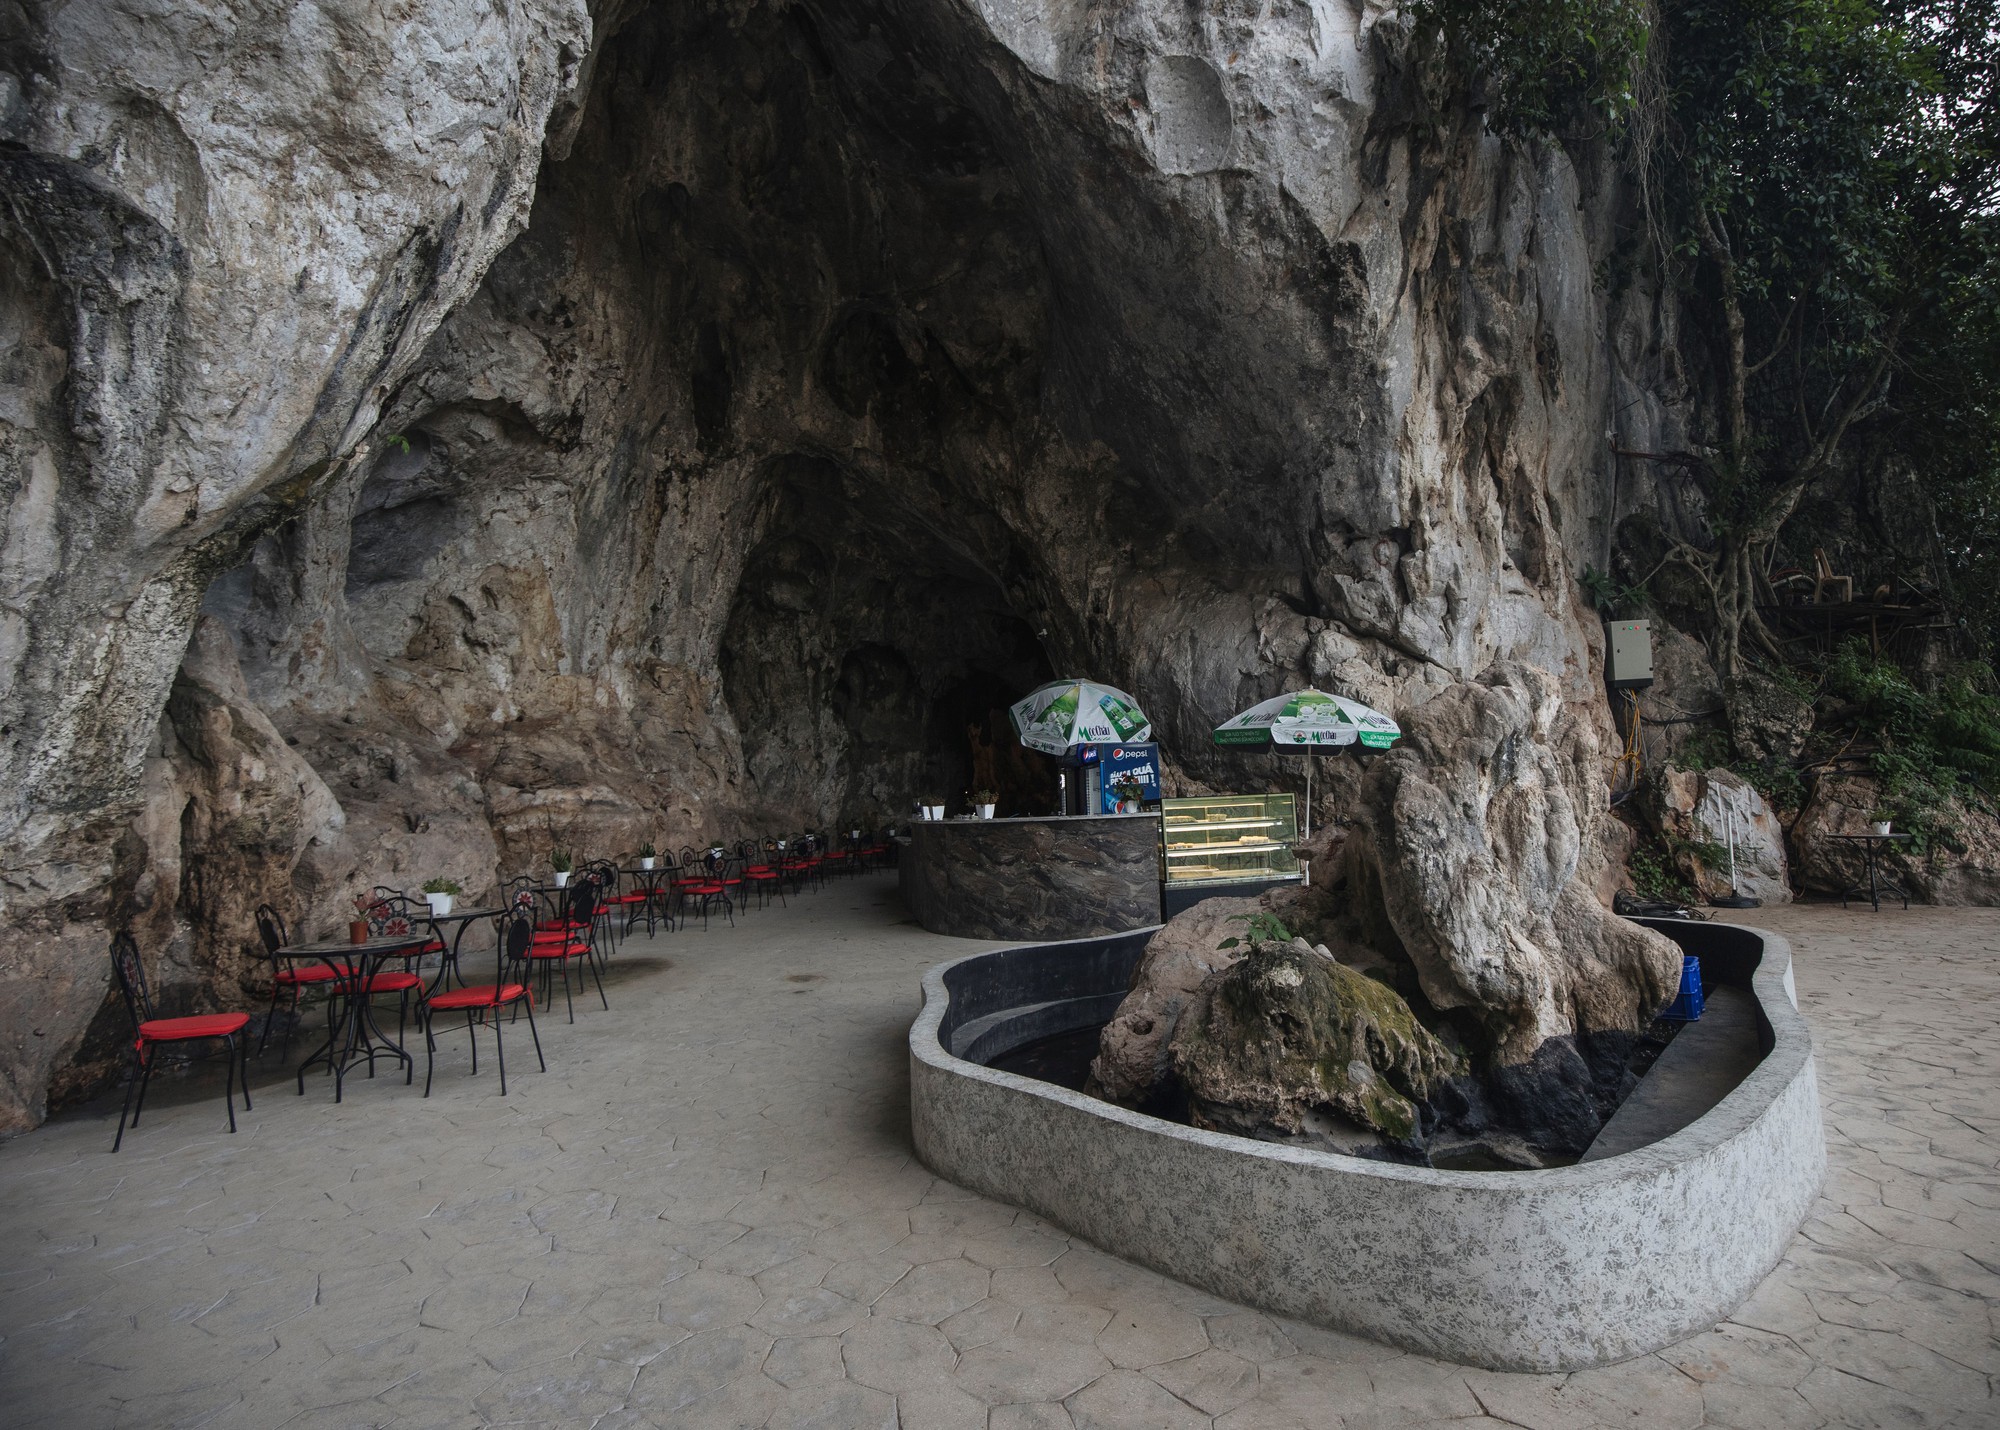 Mãn nhãn với cây cầu kính đi bộ dài nhất thế giới hùng vĩ giữa núi rừng Việt Nam - Ảnh 6.